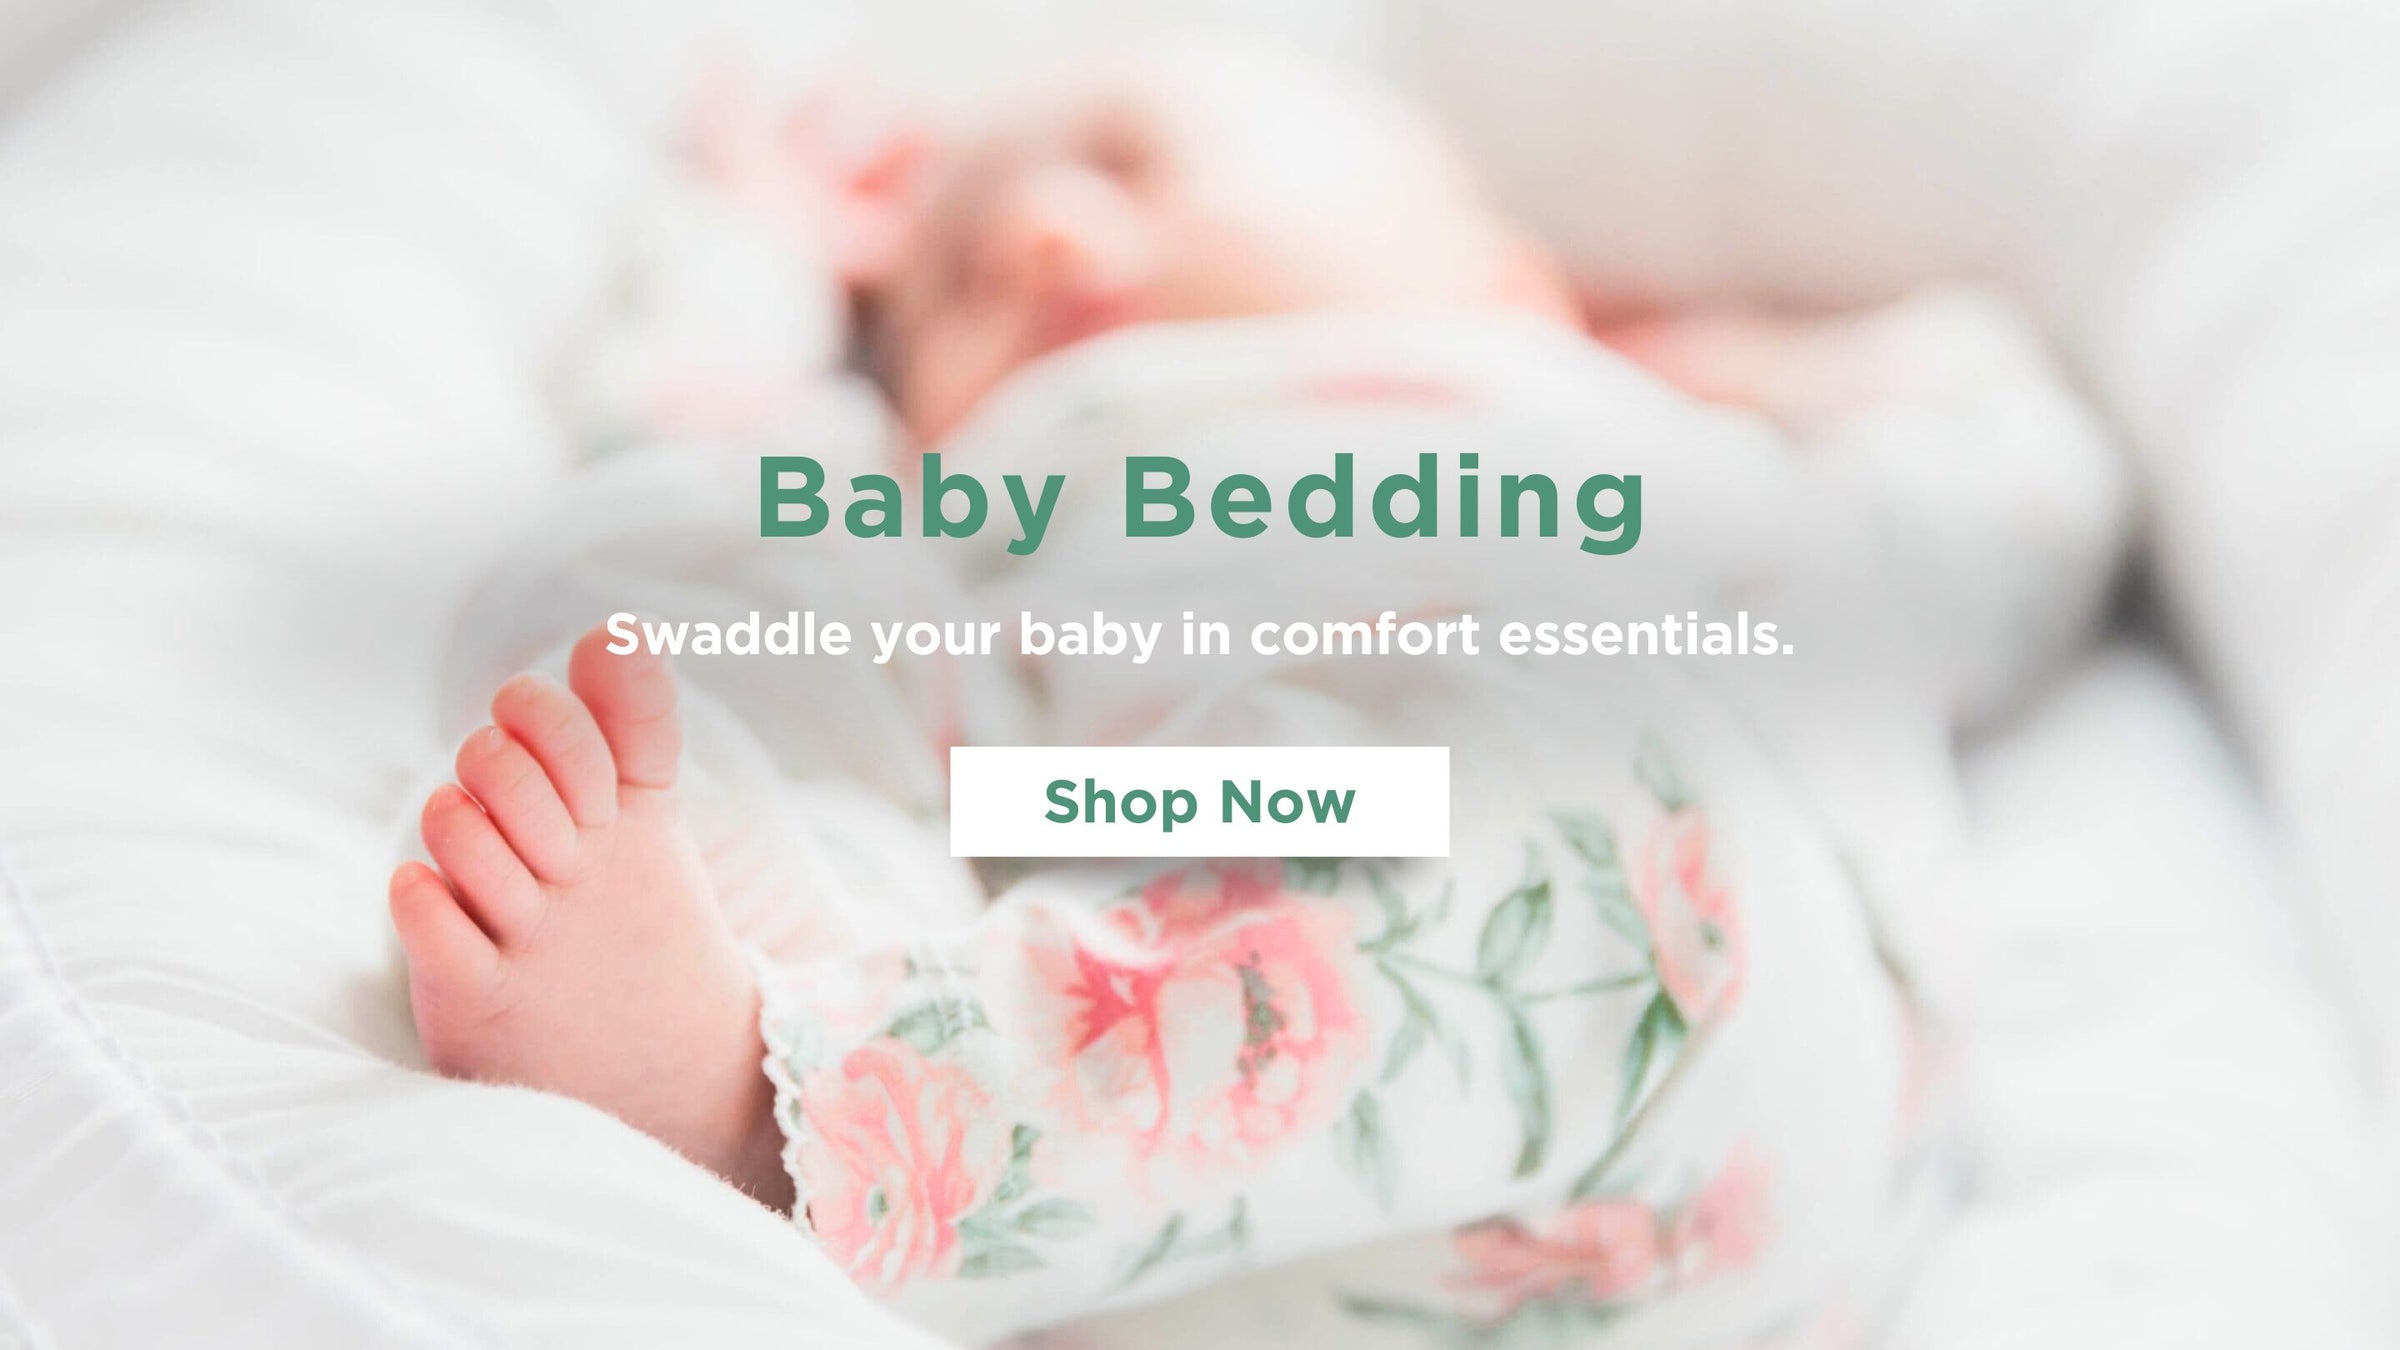 baby-bedding-essentials-australia-bukkub-desktop